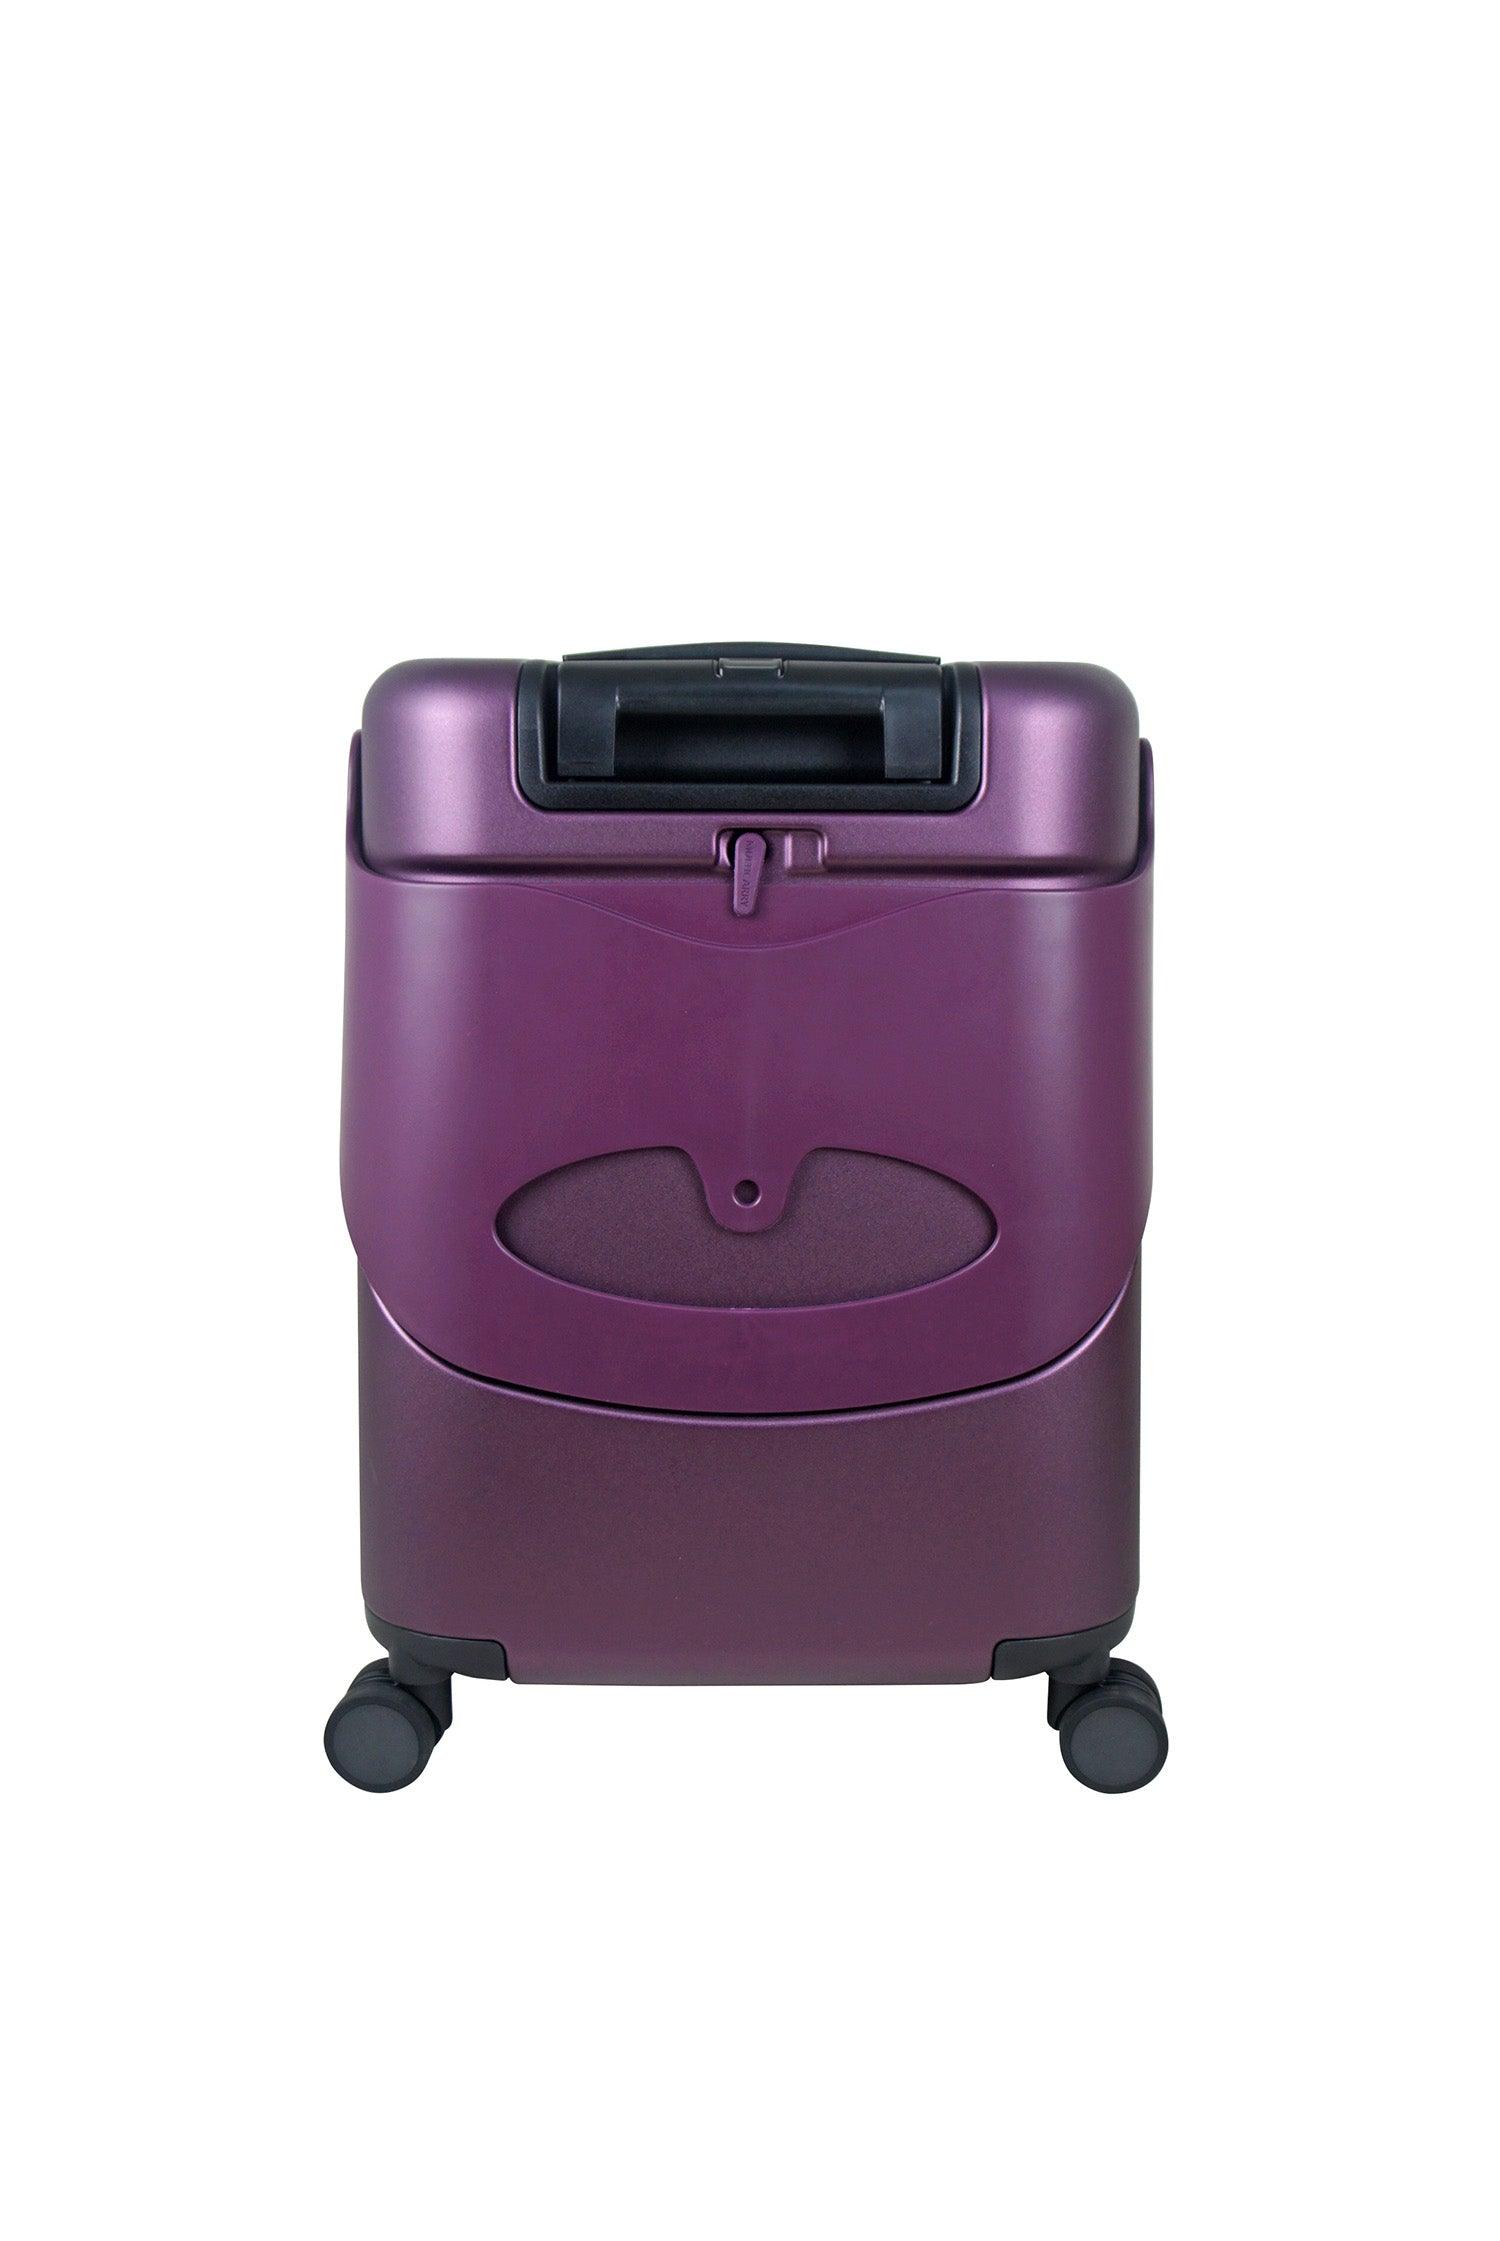 Playmarket Go Up Basic Suitcase, 110 centimeters – BigaMart